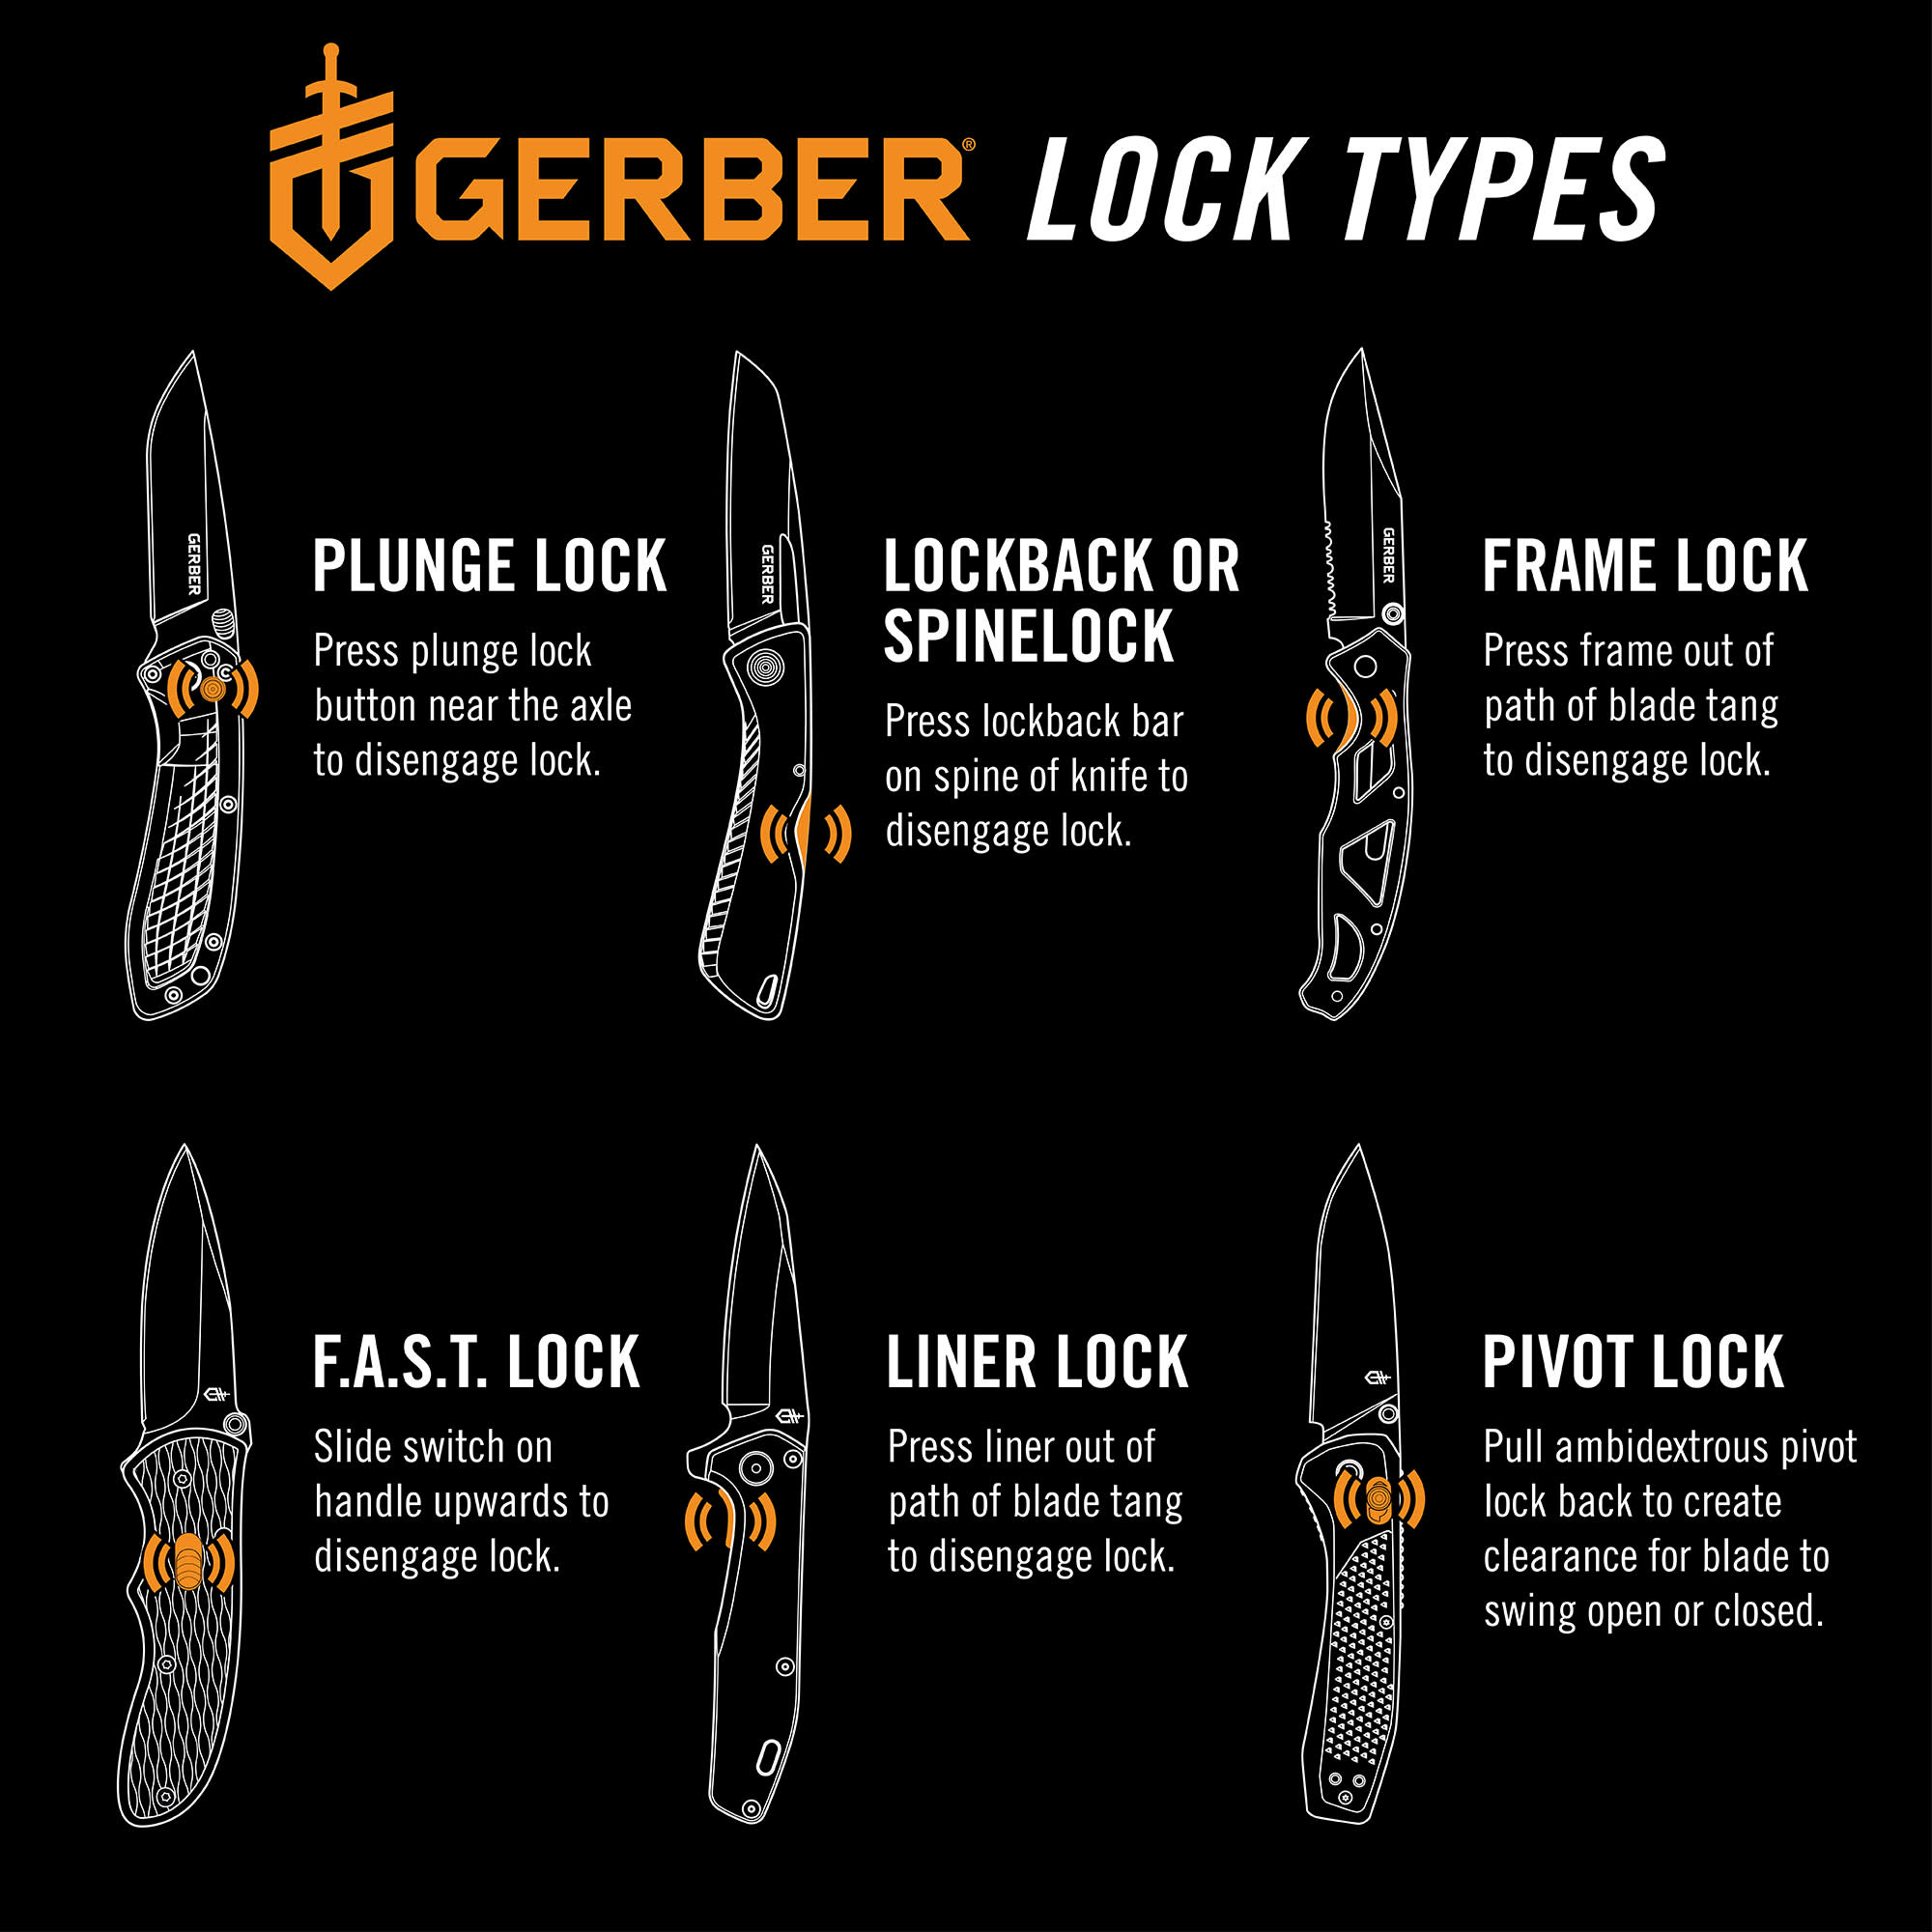 Gerber® Mansfield Folding Knife - Natural Micarta